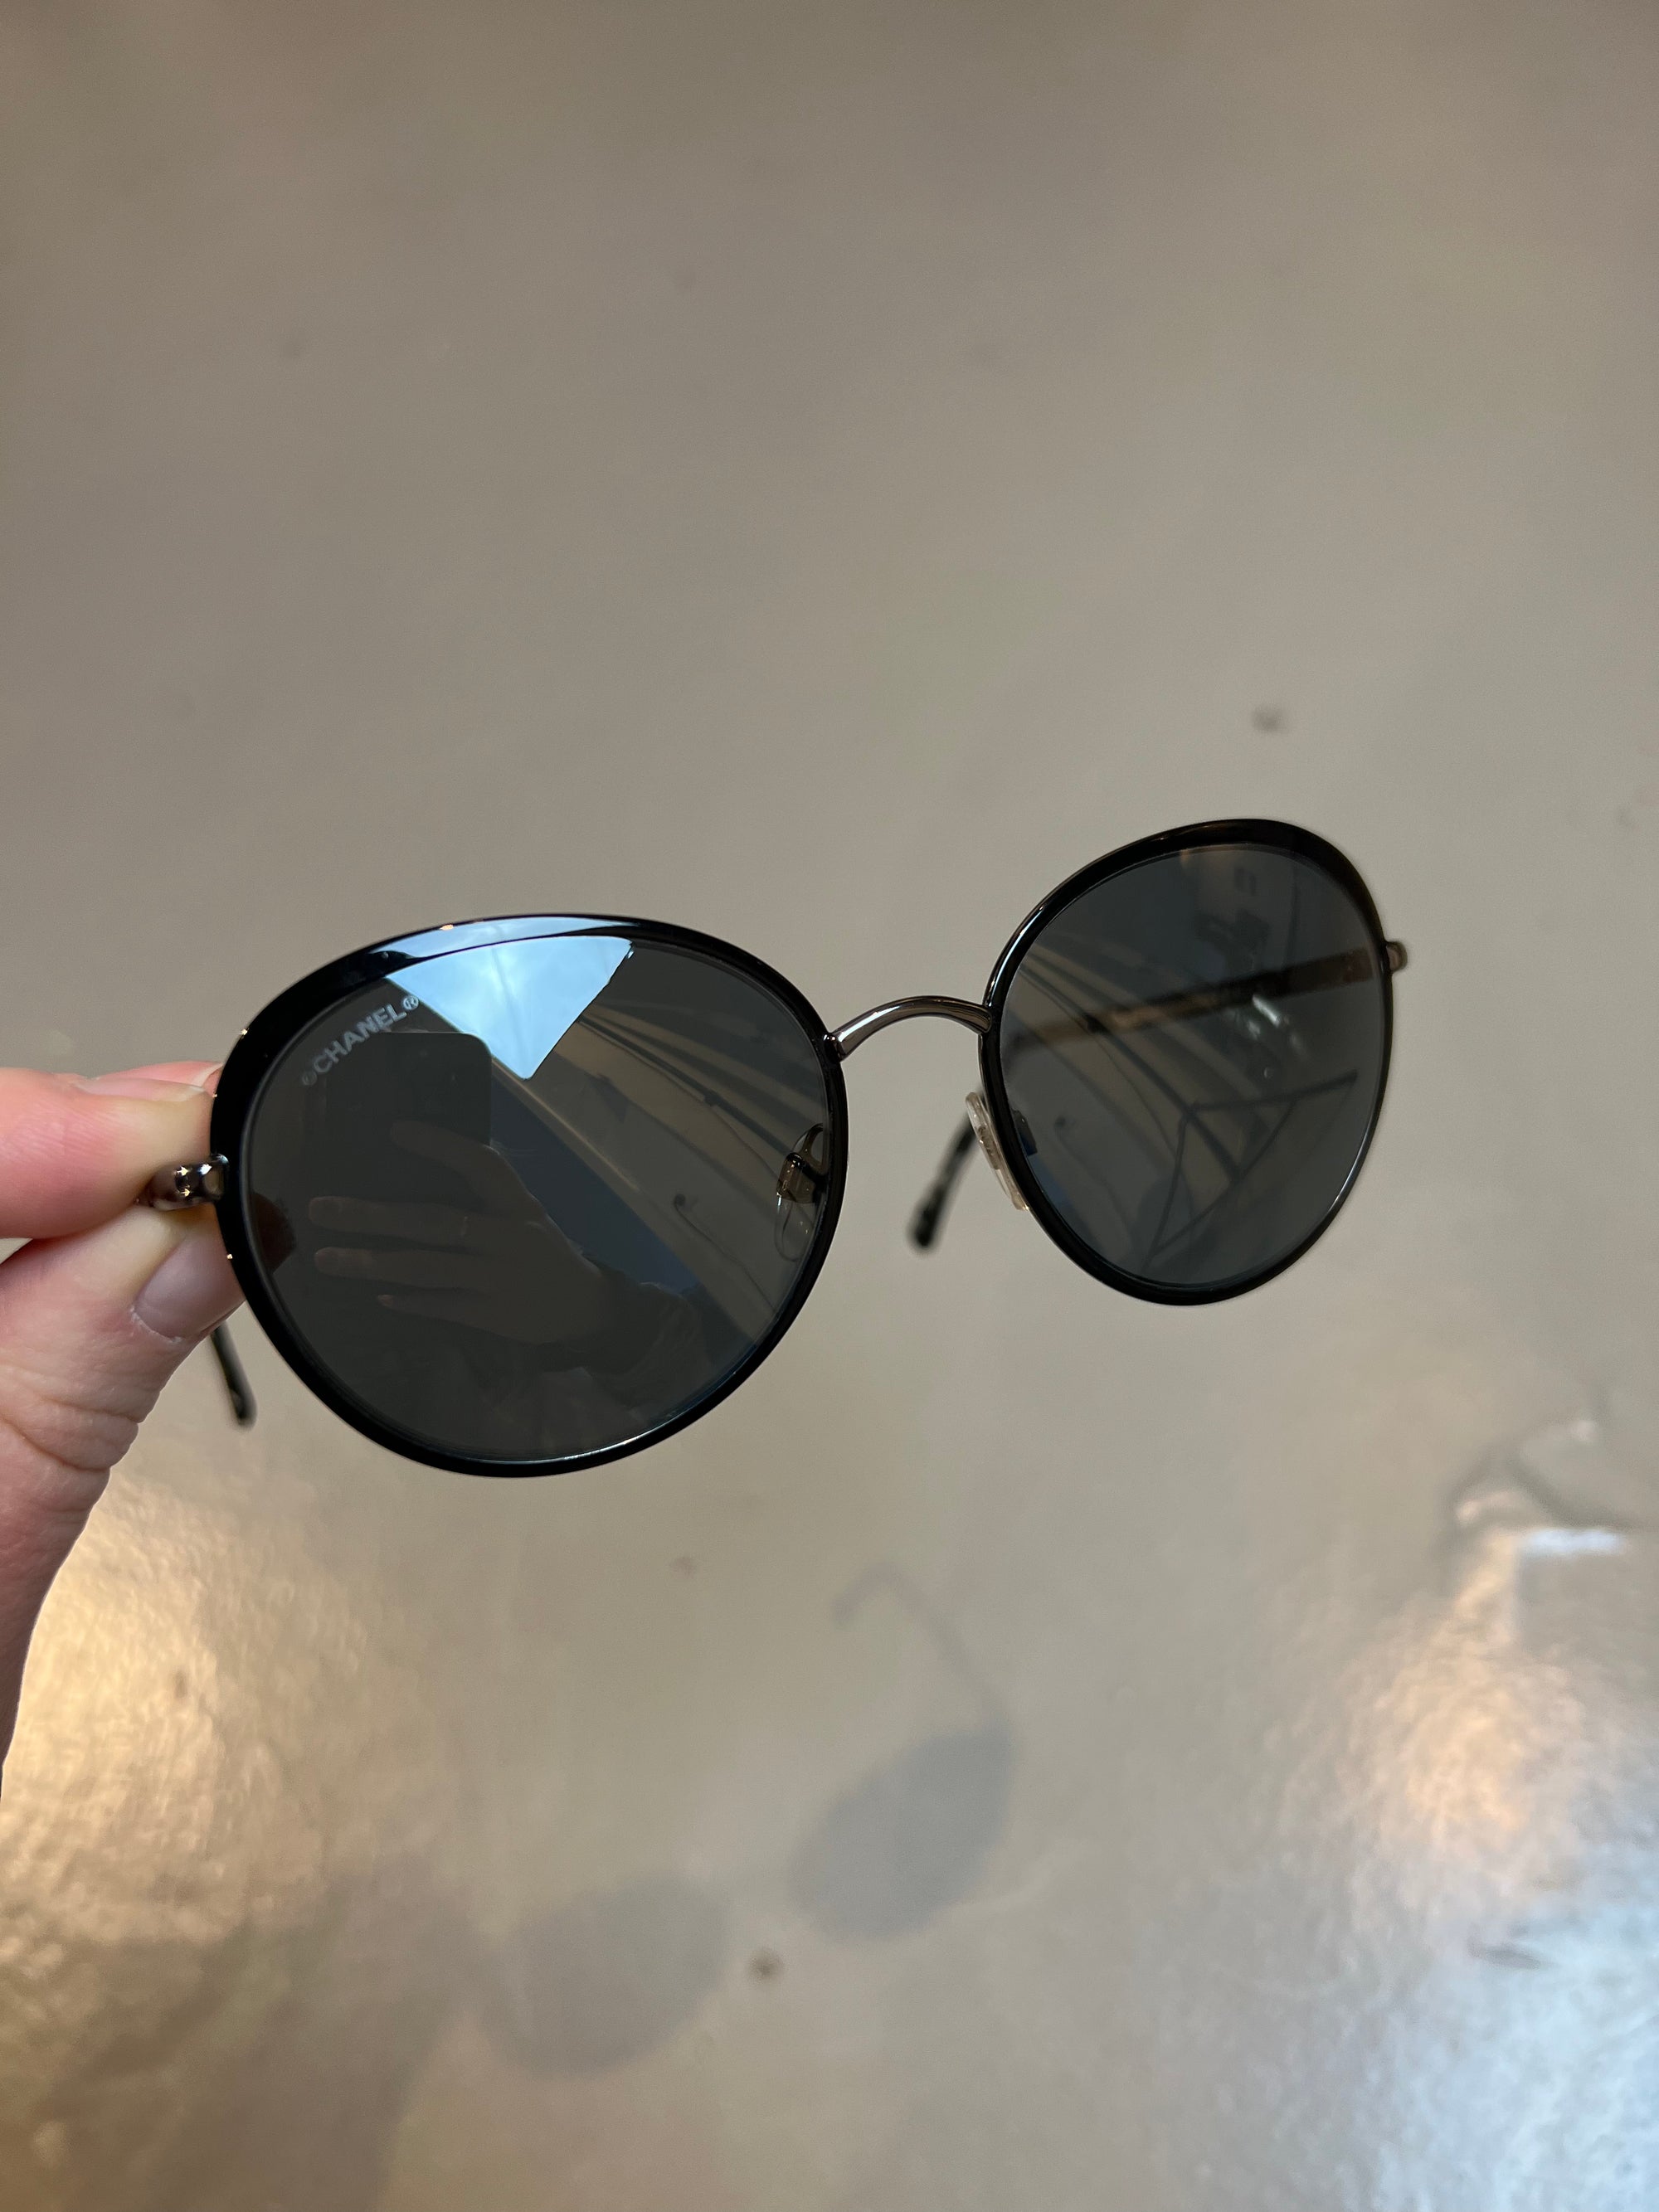 Detail-Produktbild einer runden Chanel Sonnenbrille in schwarz vor grauem Hintergrund.